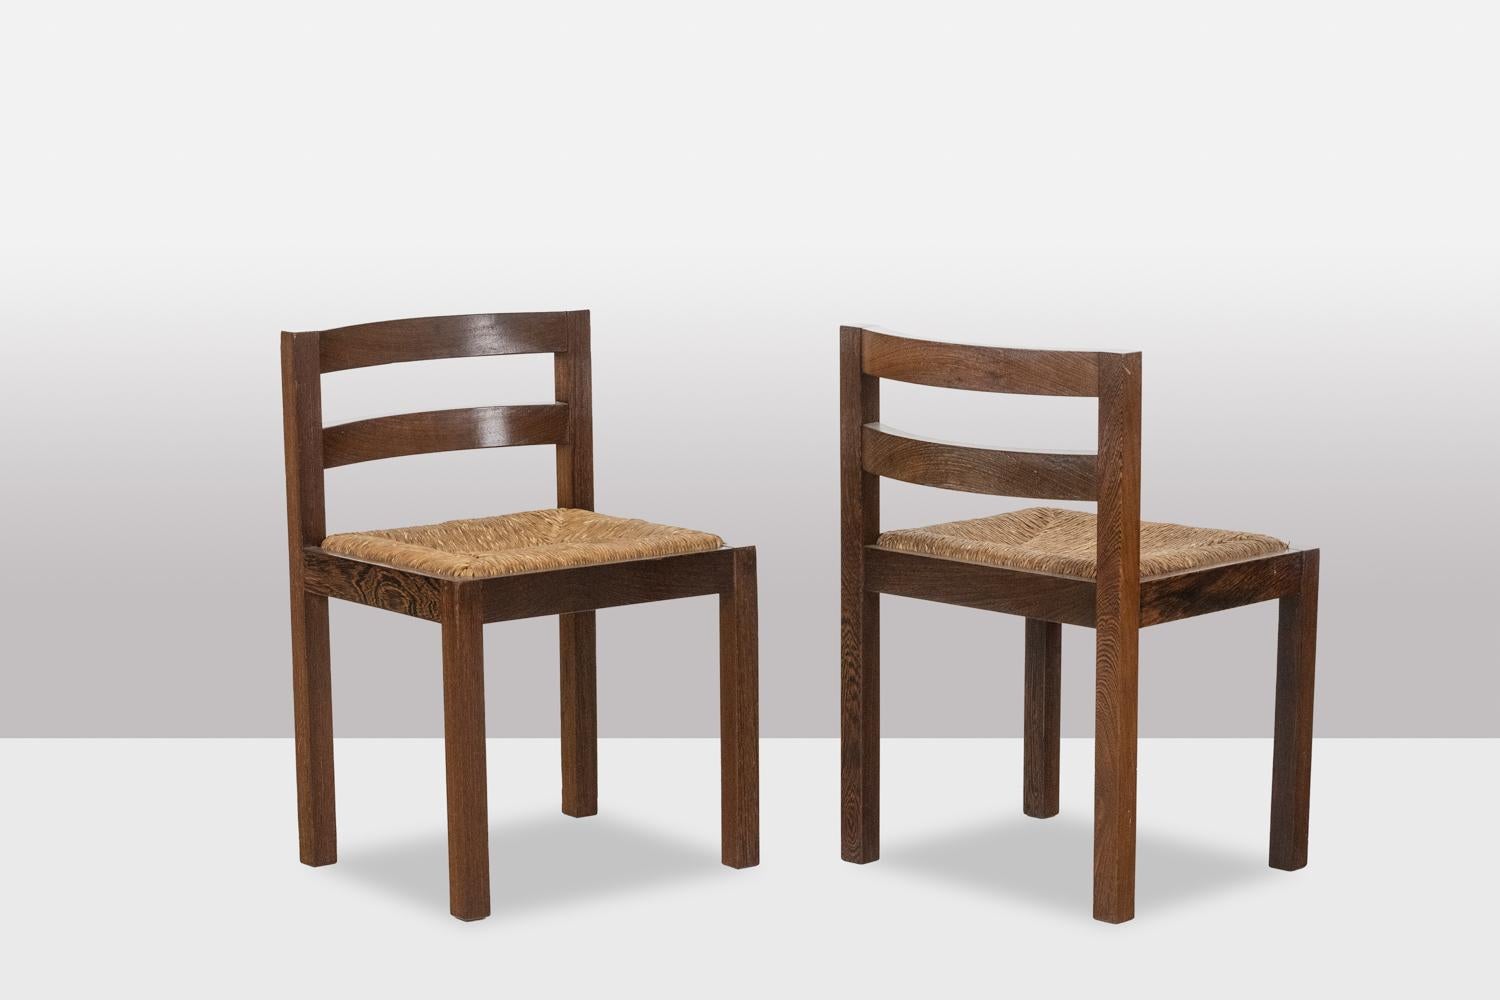 Esszimmergarnitur in Wenge, bestehend aus einem Tisch und sechs Stühlen. Rechteckiger Tisch mit kreuzförmigem Fuß. Stühle mit Seilsitzen und geschwungenen Rückenlehnen.

Dänisches Werk aus den 1970er Jahren.